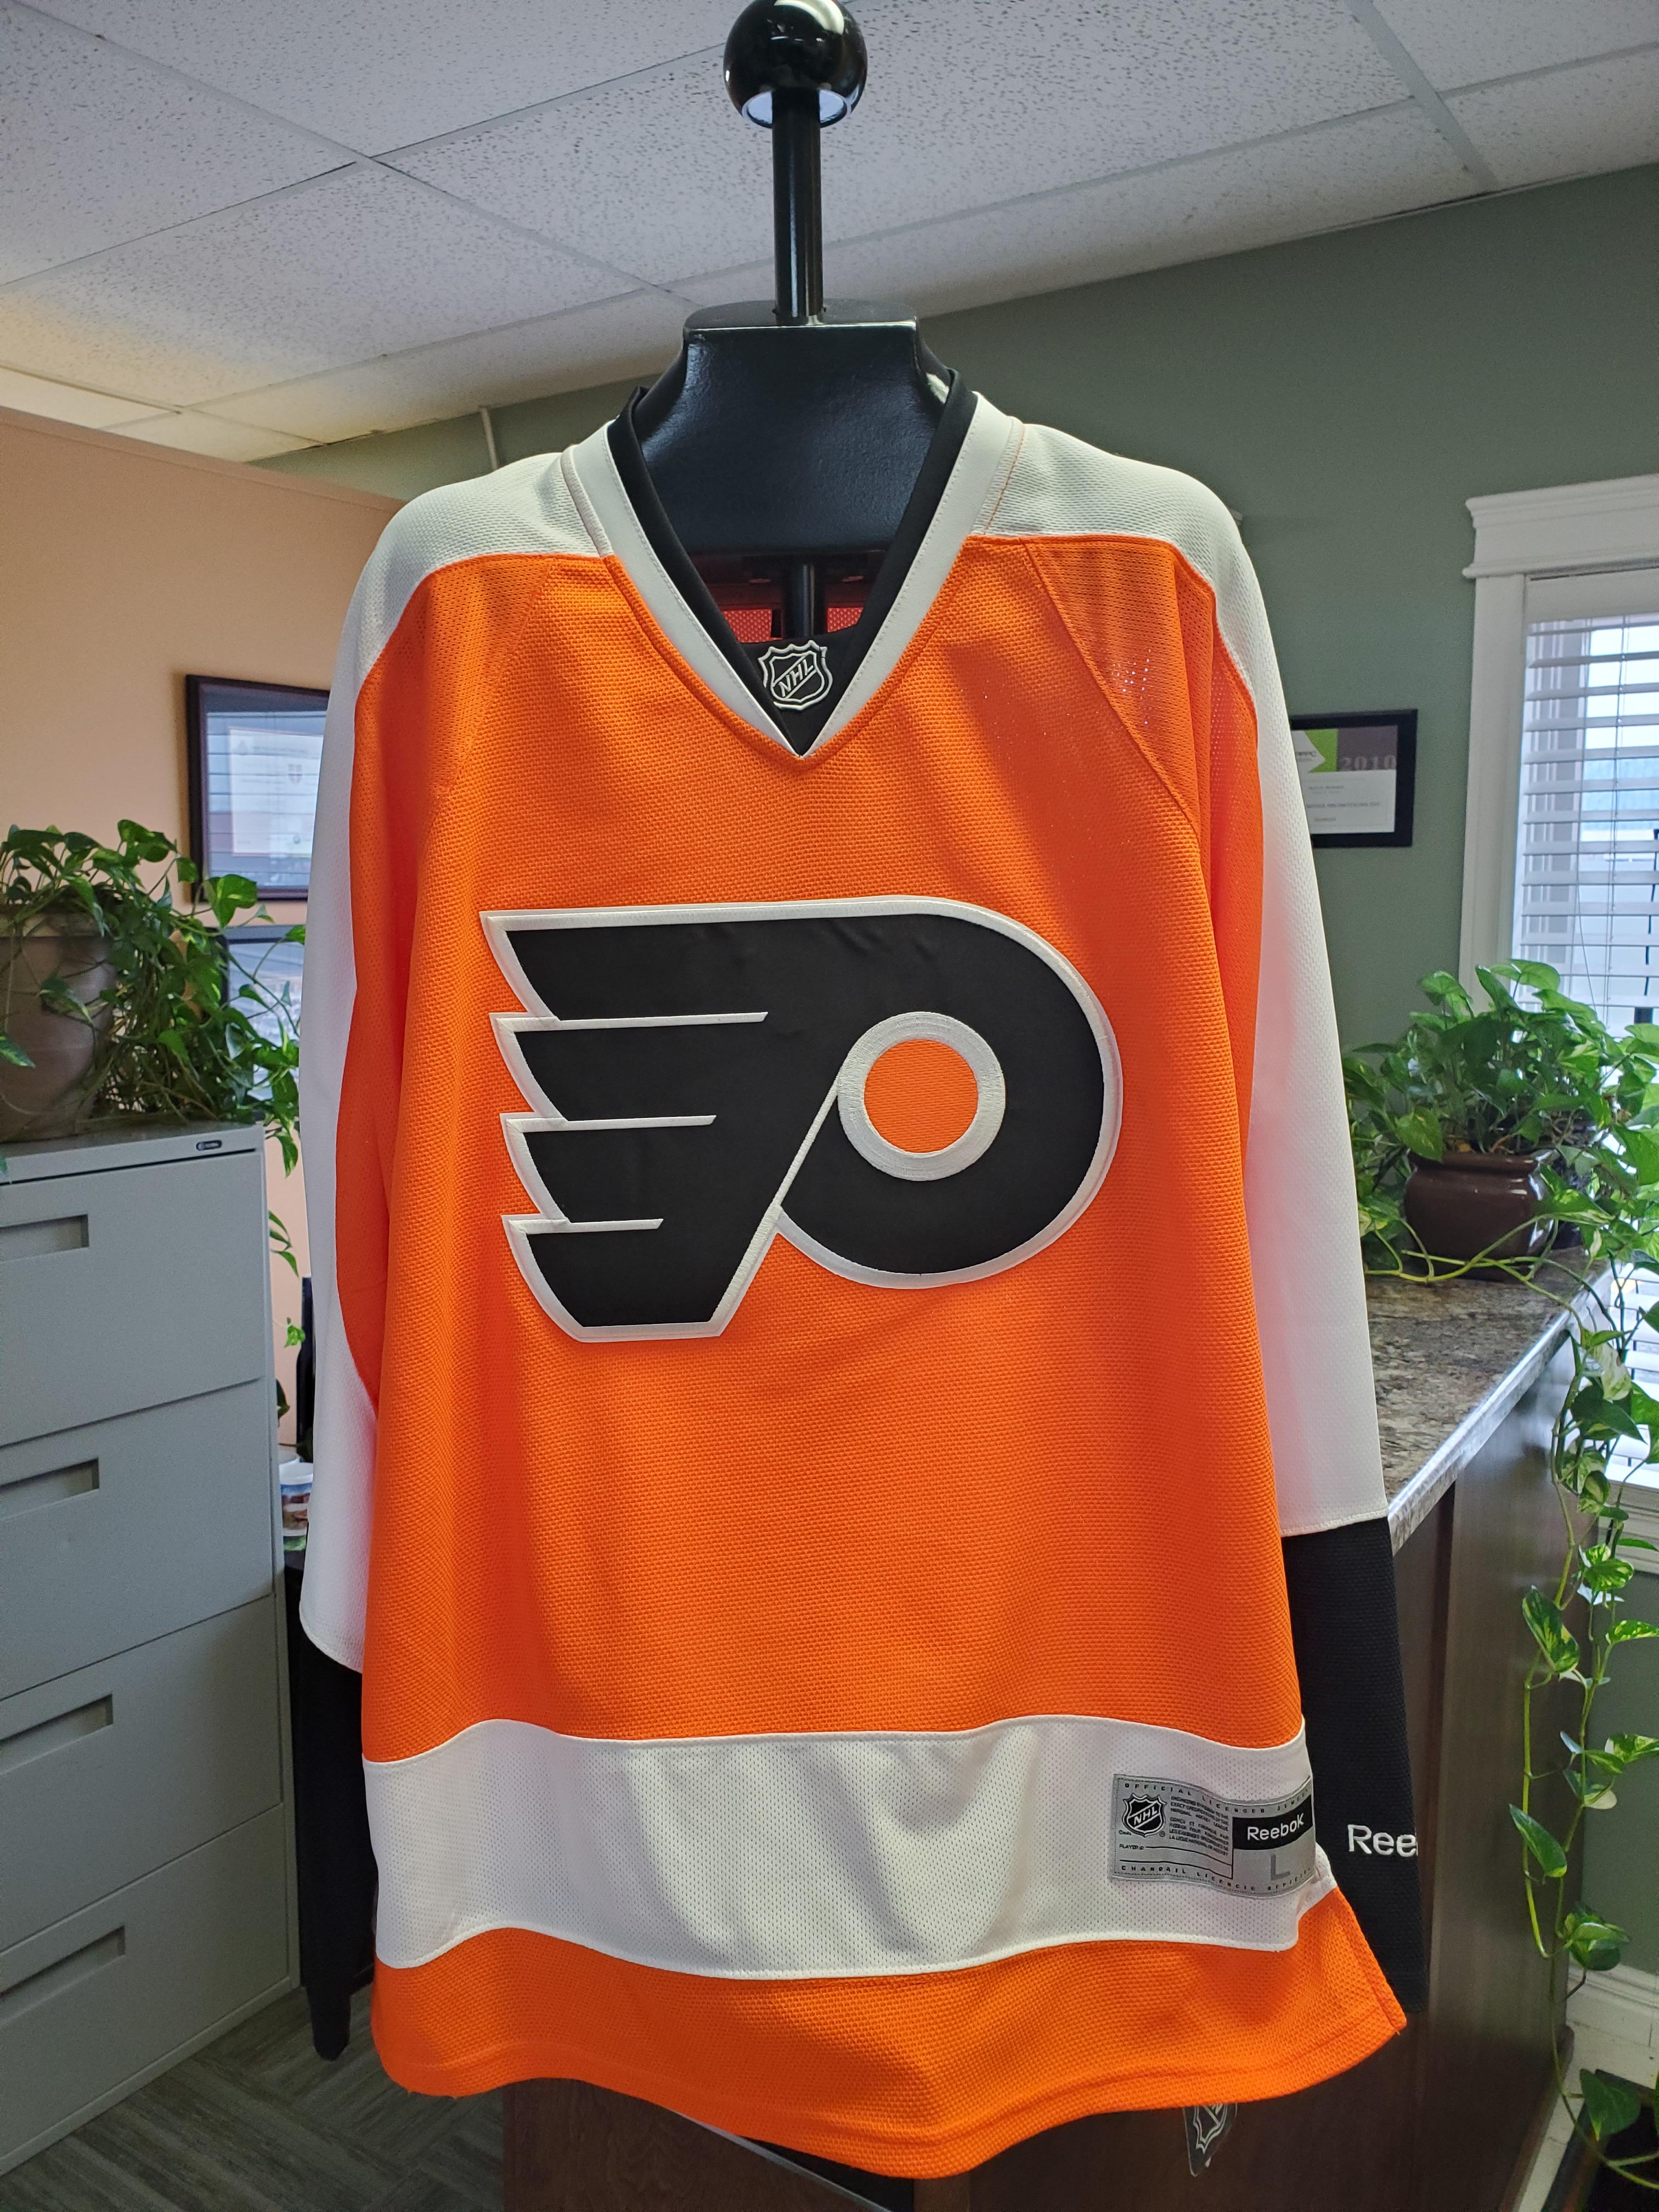  NHL Women's Philadelphia Flyers Reebok Premier Team Jersey -  7214W5W1Wrpfl (Orange, Large) : Sports Fan Jerseys : Sports & Outdoors